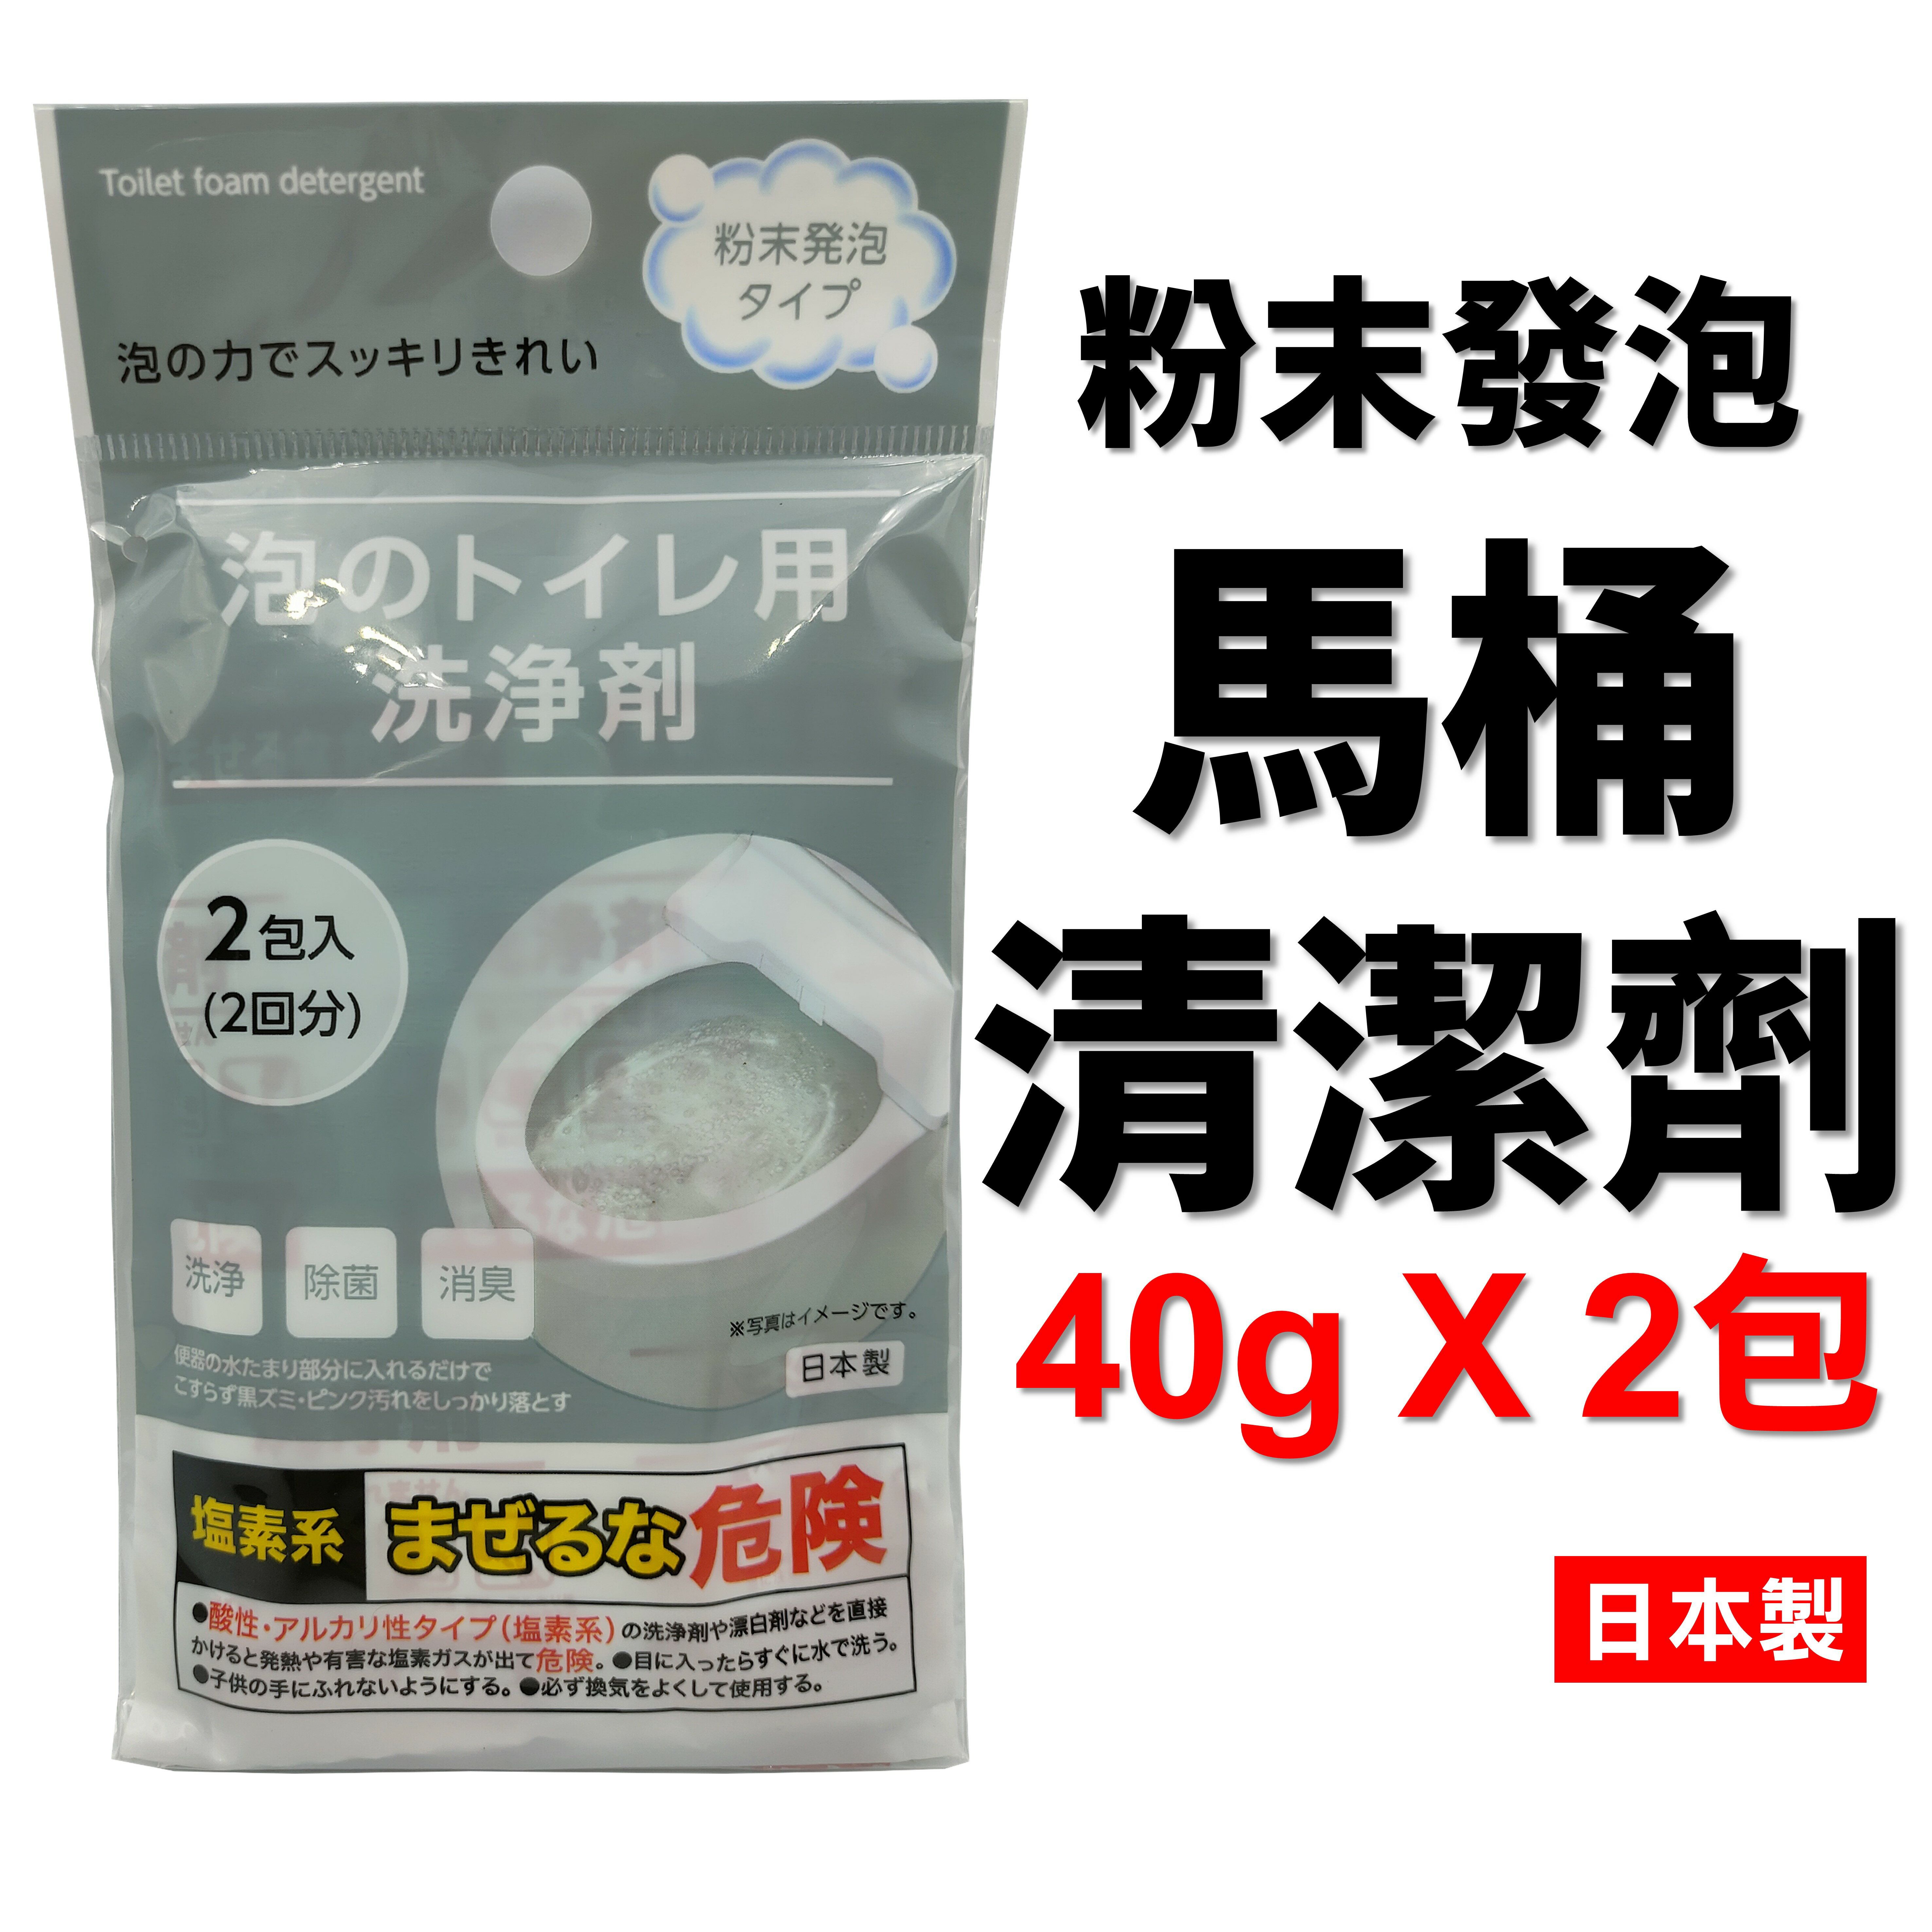 日本 粉末發泡馬桶清潔劑 40g x 2包入